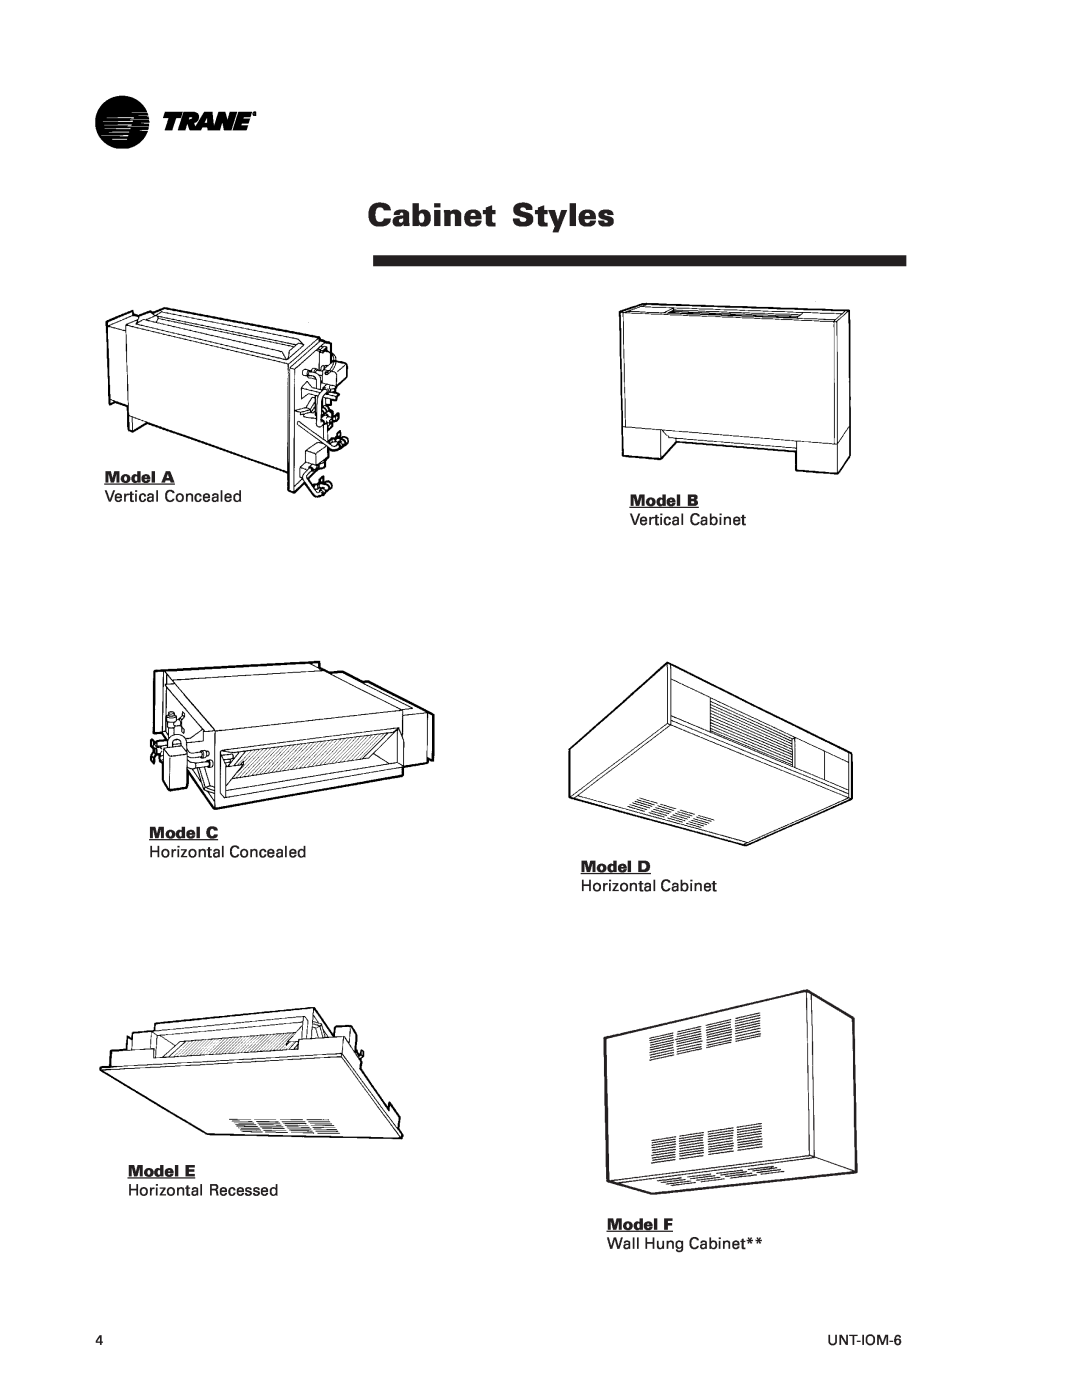 Trane LO manual Cabinet Styles, Model A, Model C, Model E, Model B, Model D, Model F 